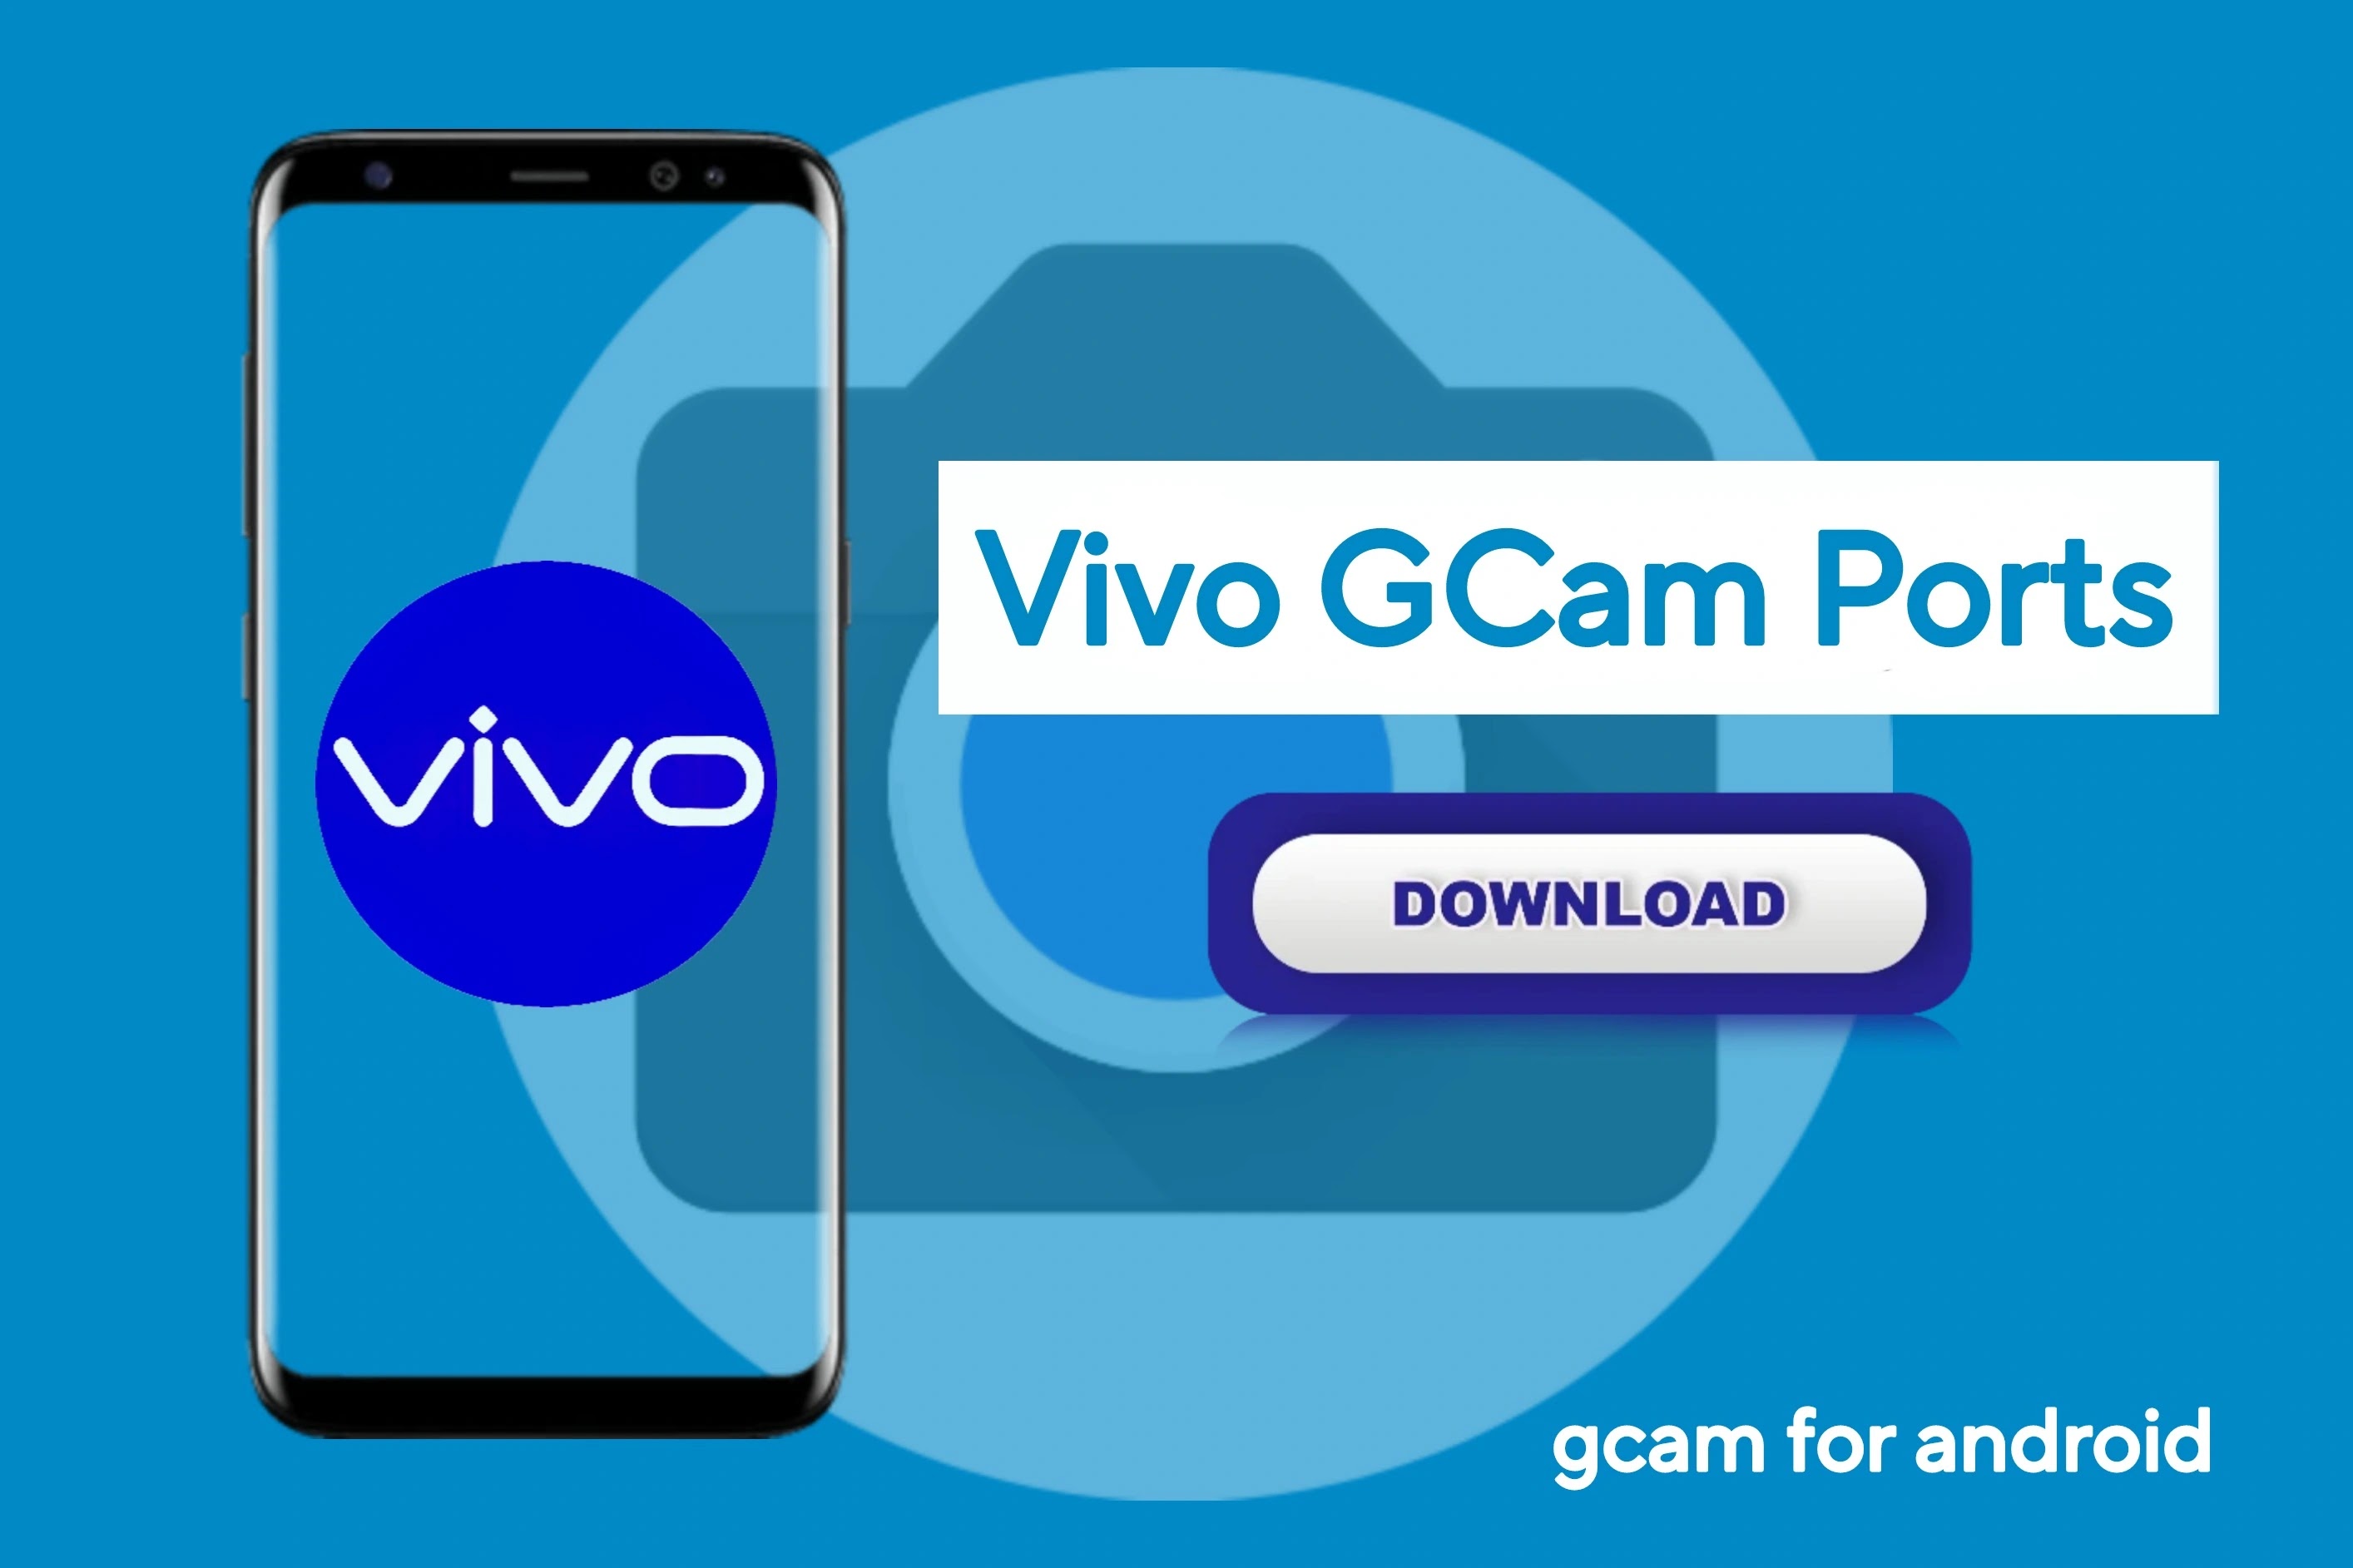 Vivo Y200 Gcam port download